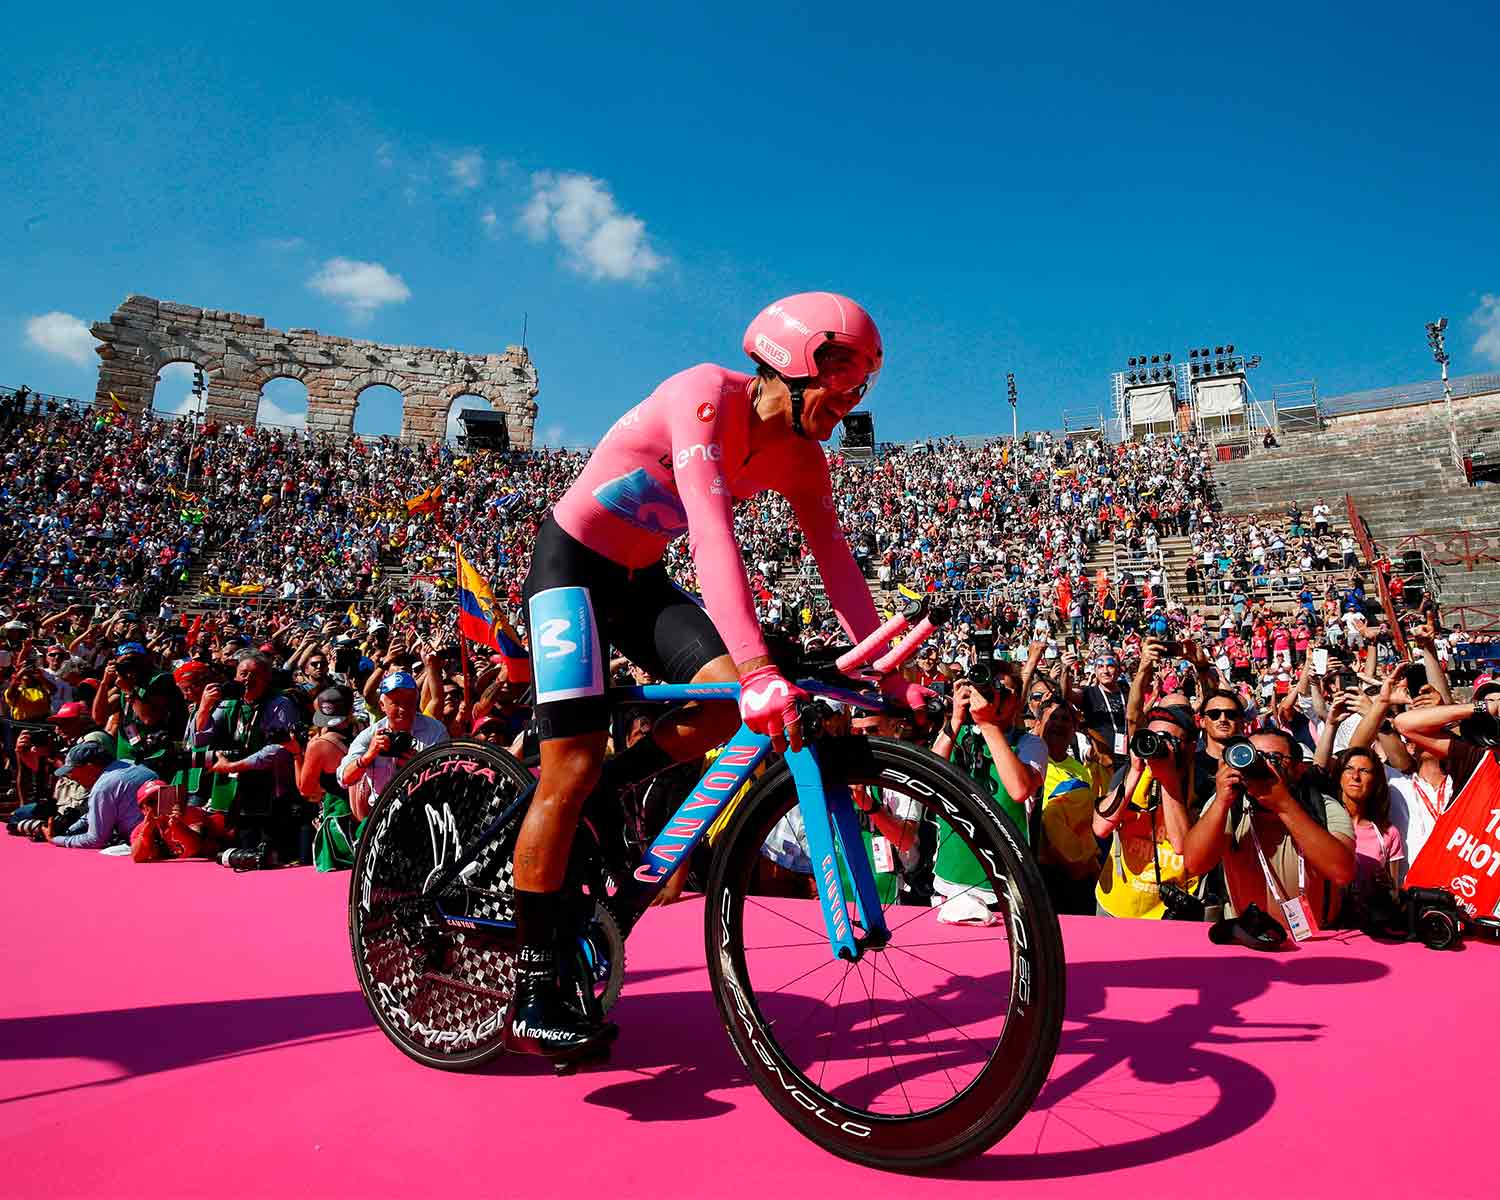 Il ciclista ecuadoriano Richard Carapaz, vincitore al Giro d’Italia 2019, festeggia all’Arena di Verona